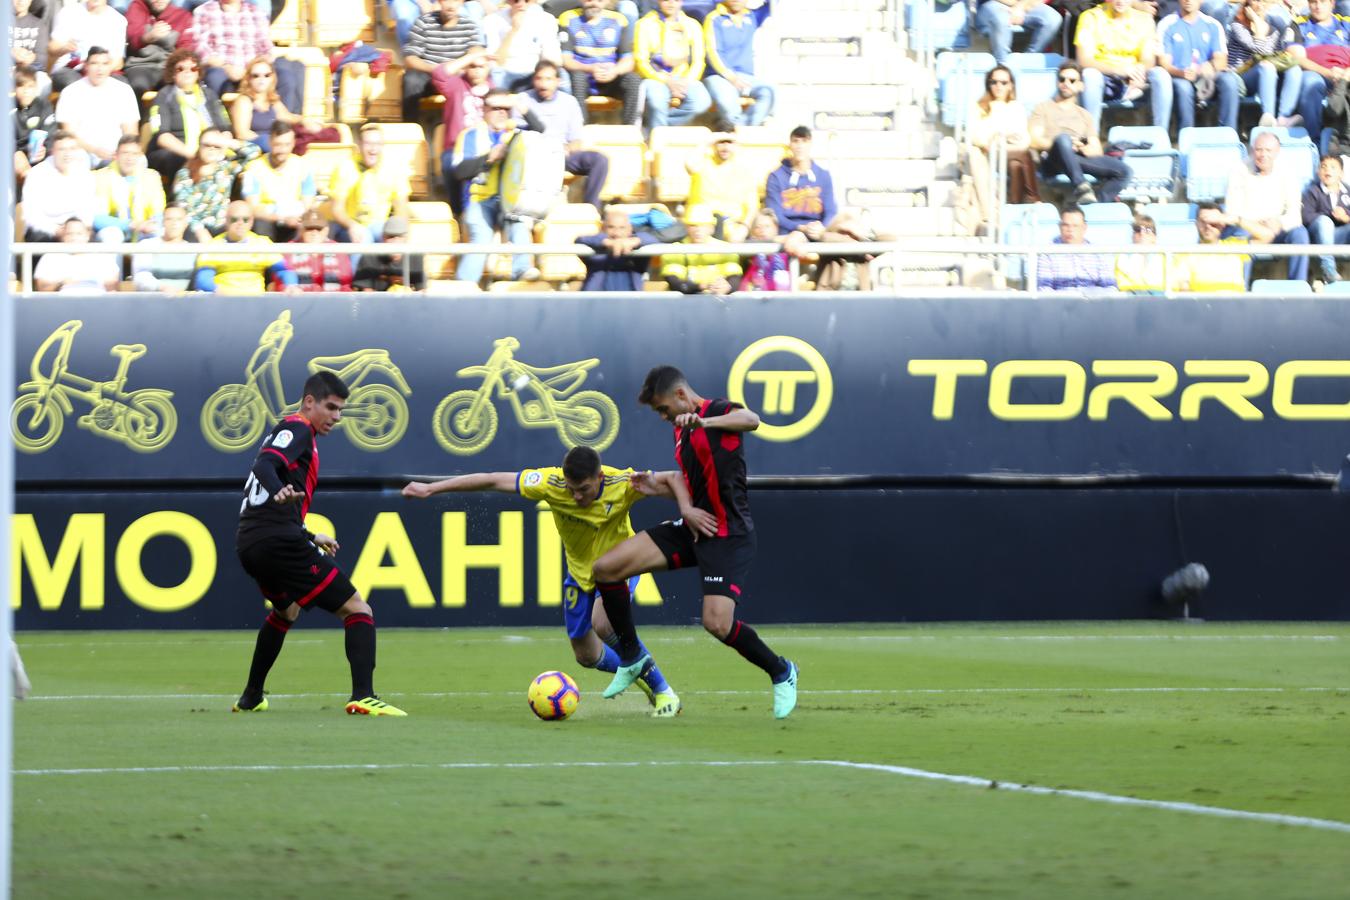 El partido en imágenes: Cádiz CF-Reus (2-0)